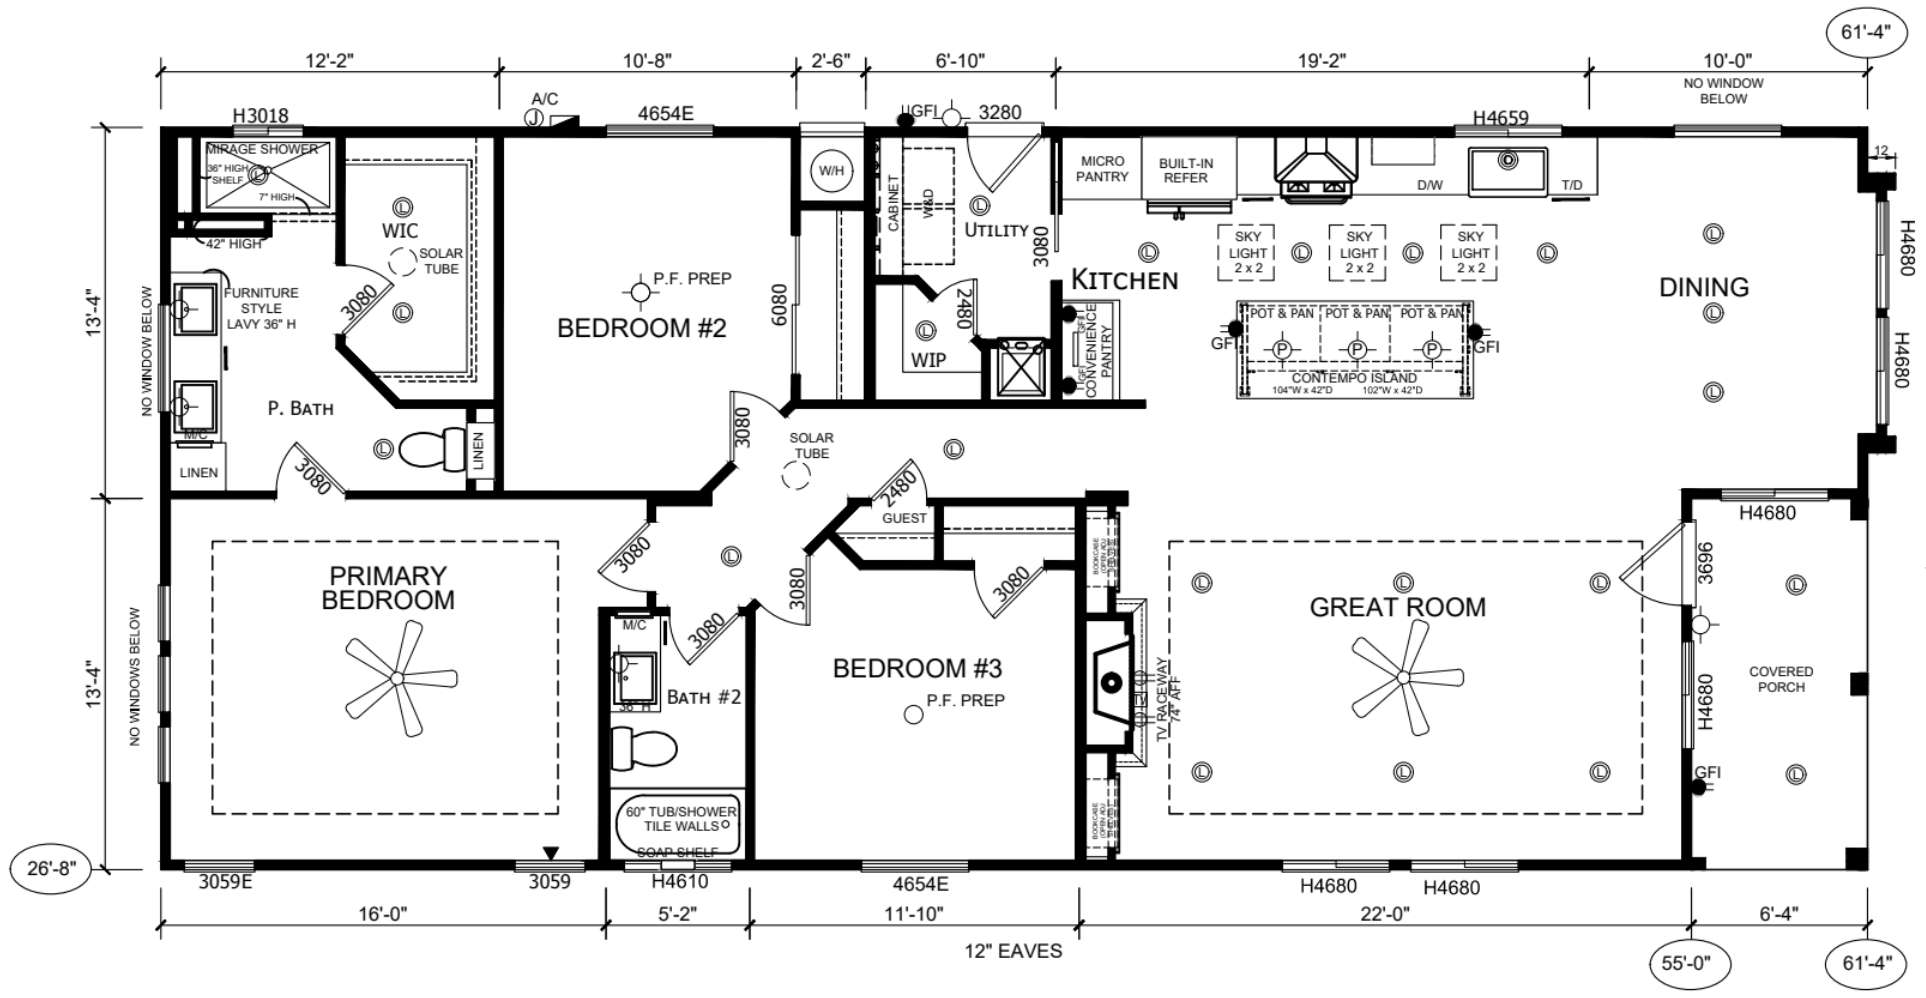 floor plan, 3 bed 2 bath affordable home, silvercrest kingsbook kb-66